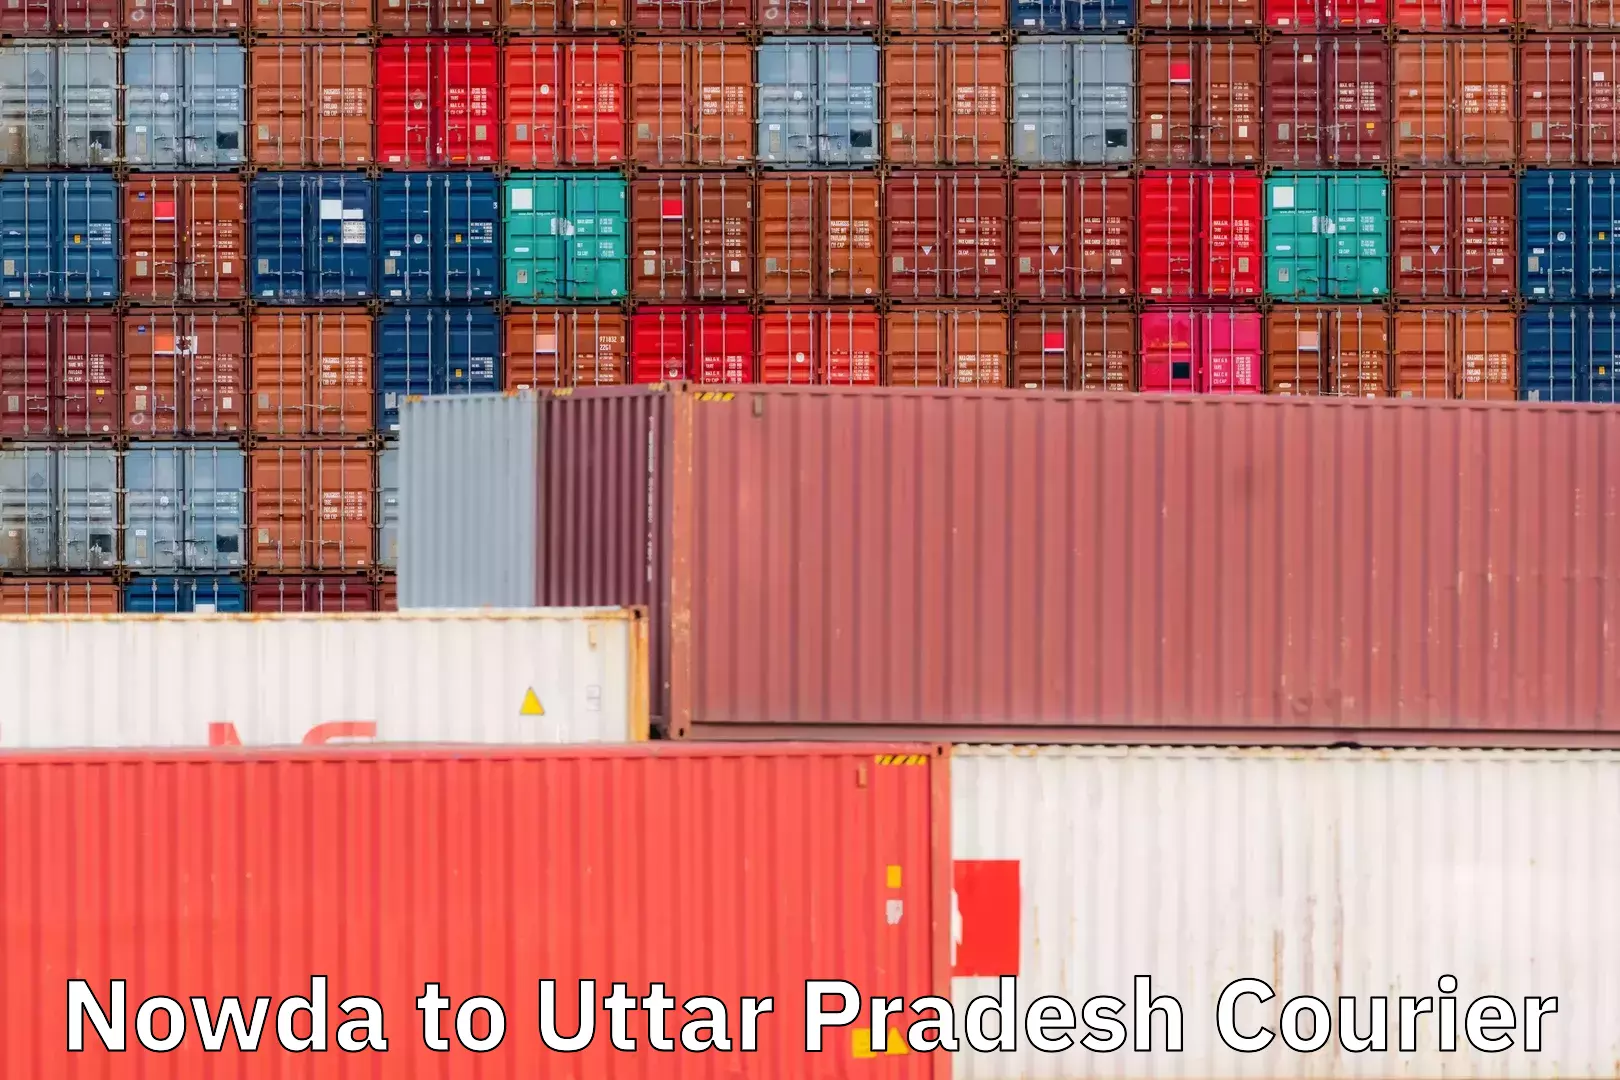 Flexible delivery schedules Nowda to Uttar Pradesh